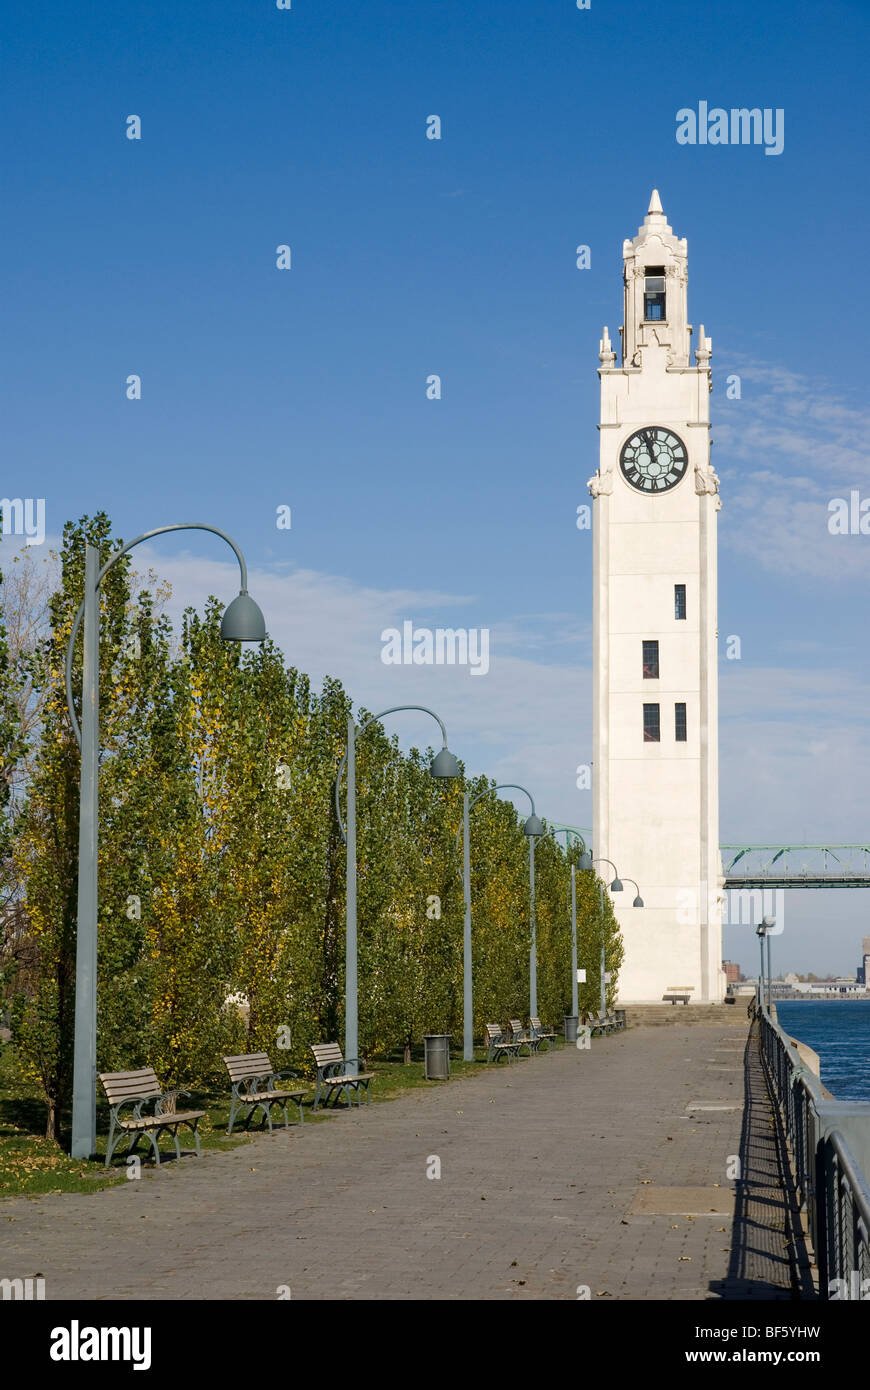 Sailors' Memorial Clock Tower (Tour de l'Horloge) in the Old Port of Montreal. Stock Photo